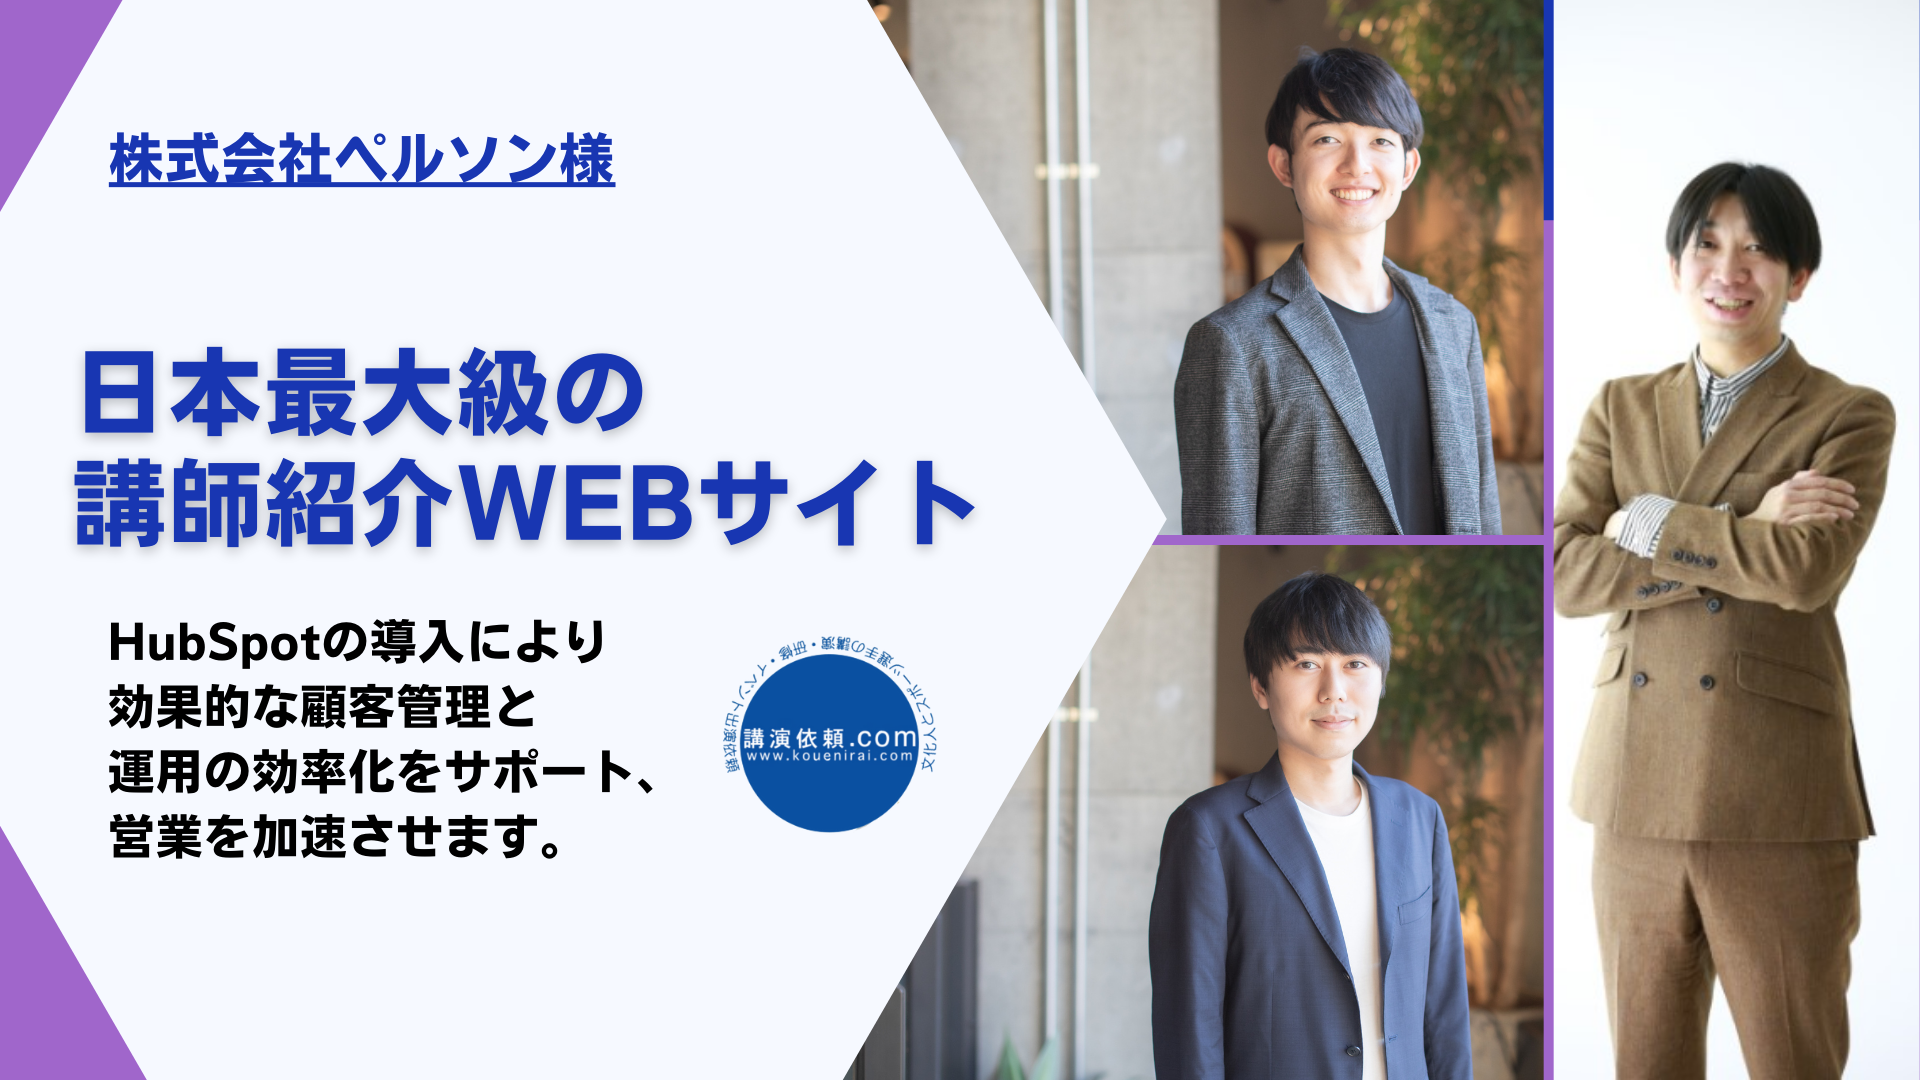 【日本最大級の講師情報 WEB サイト】HubSpotの導入により効果的な顧客管理と運用の効率化をサポート、営業を加速させます。